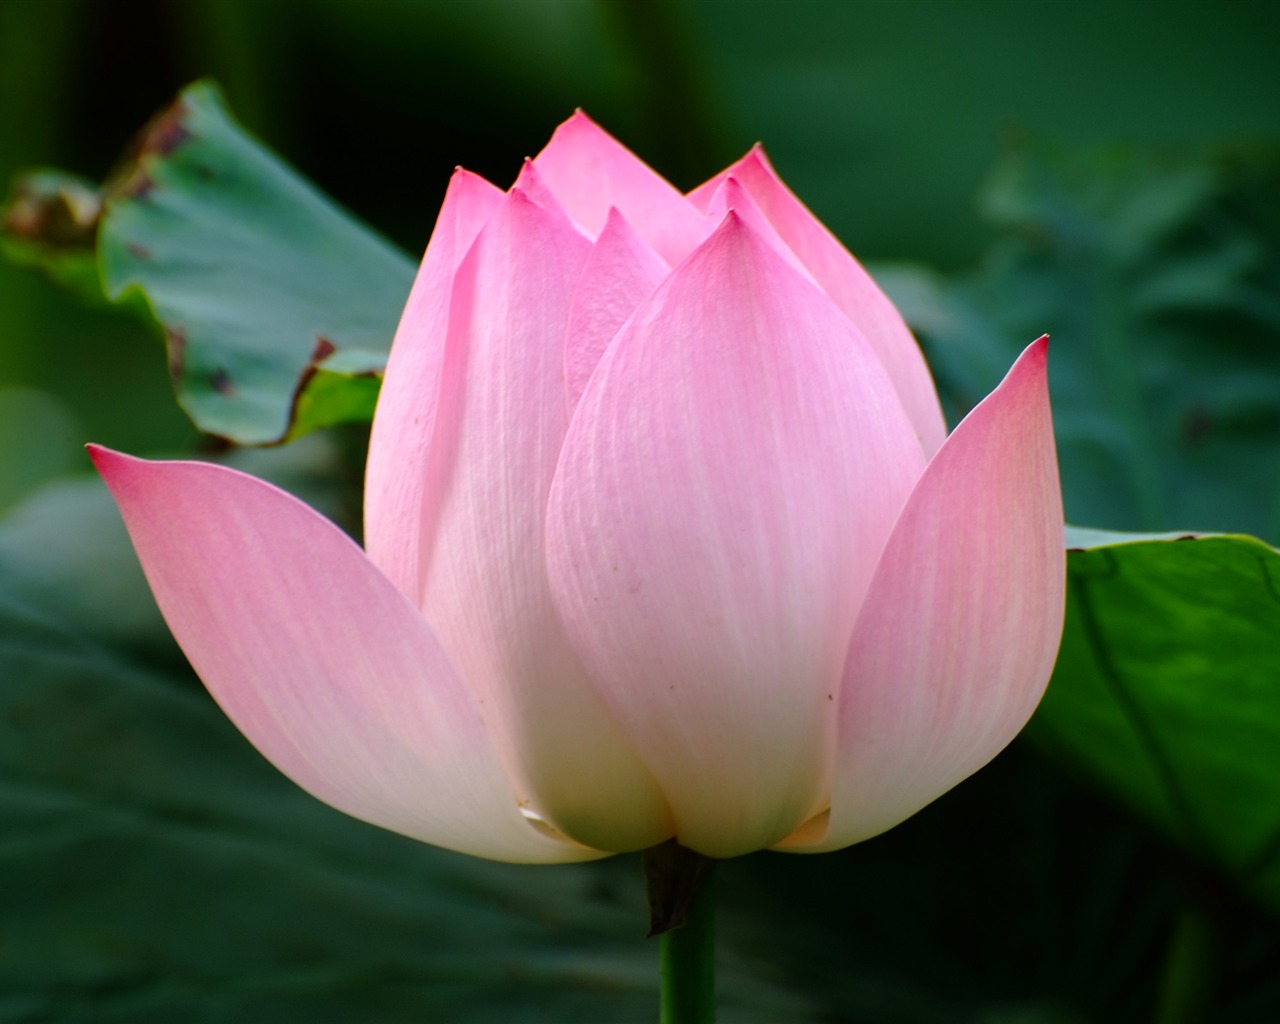 Rose Garden of the Lotus (rebar works) #6 - 1280x1024